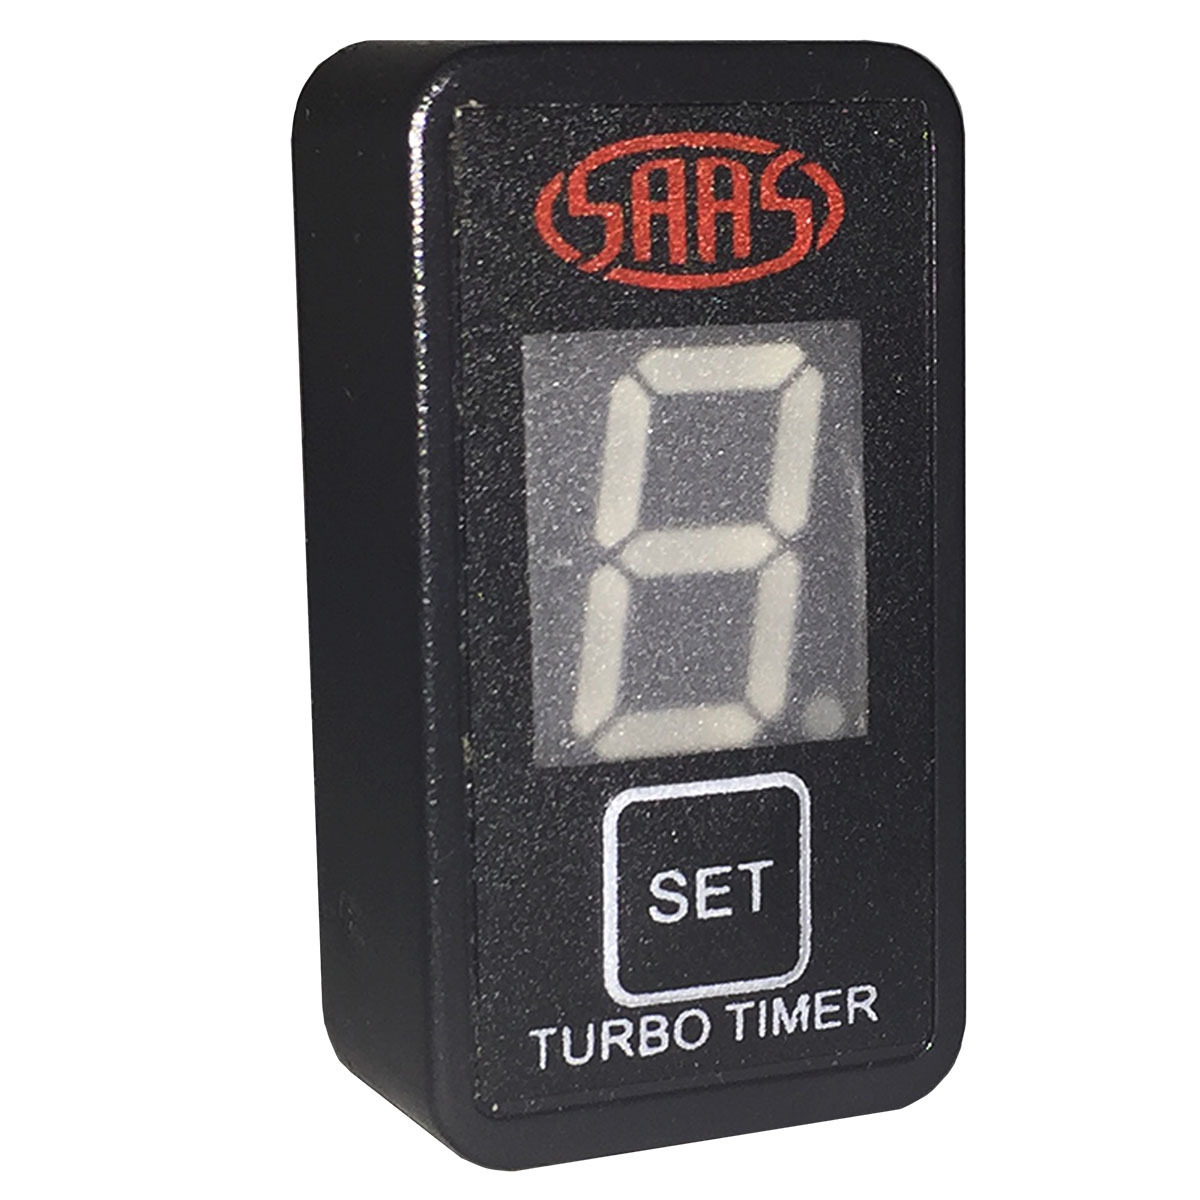 Turbo Timer Digital Switch Gauge Auto Toyota 40 x 20